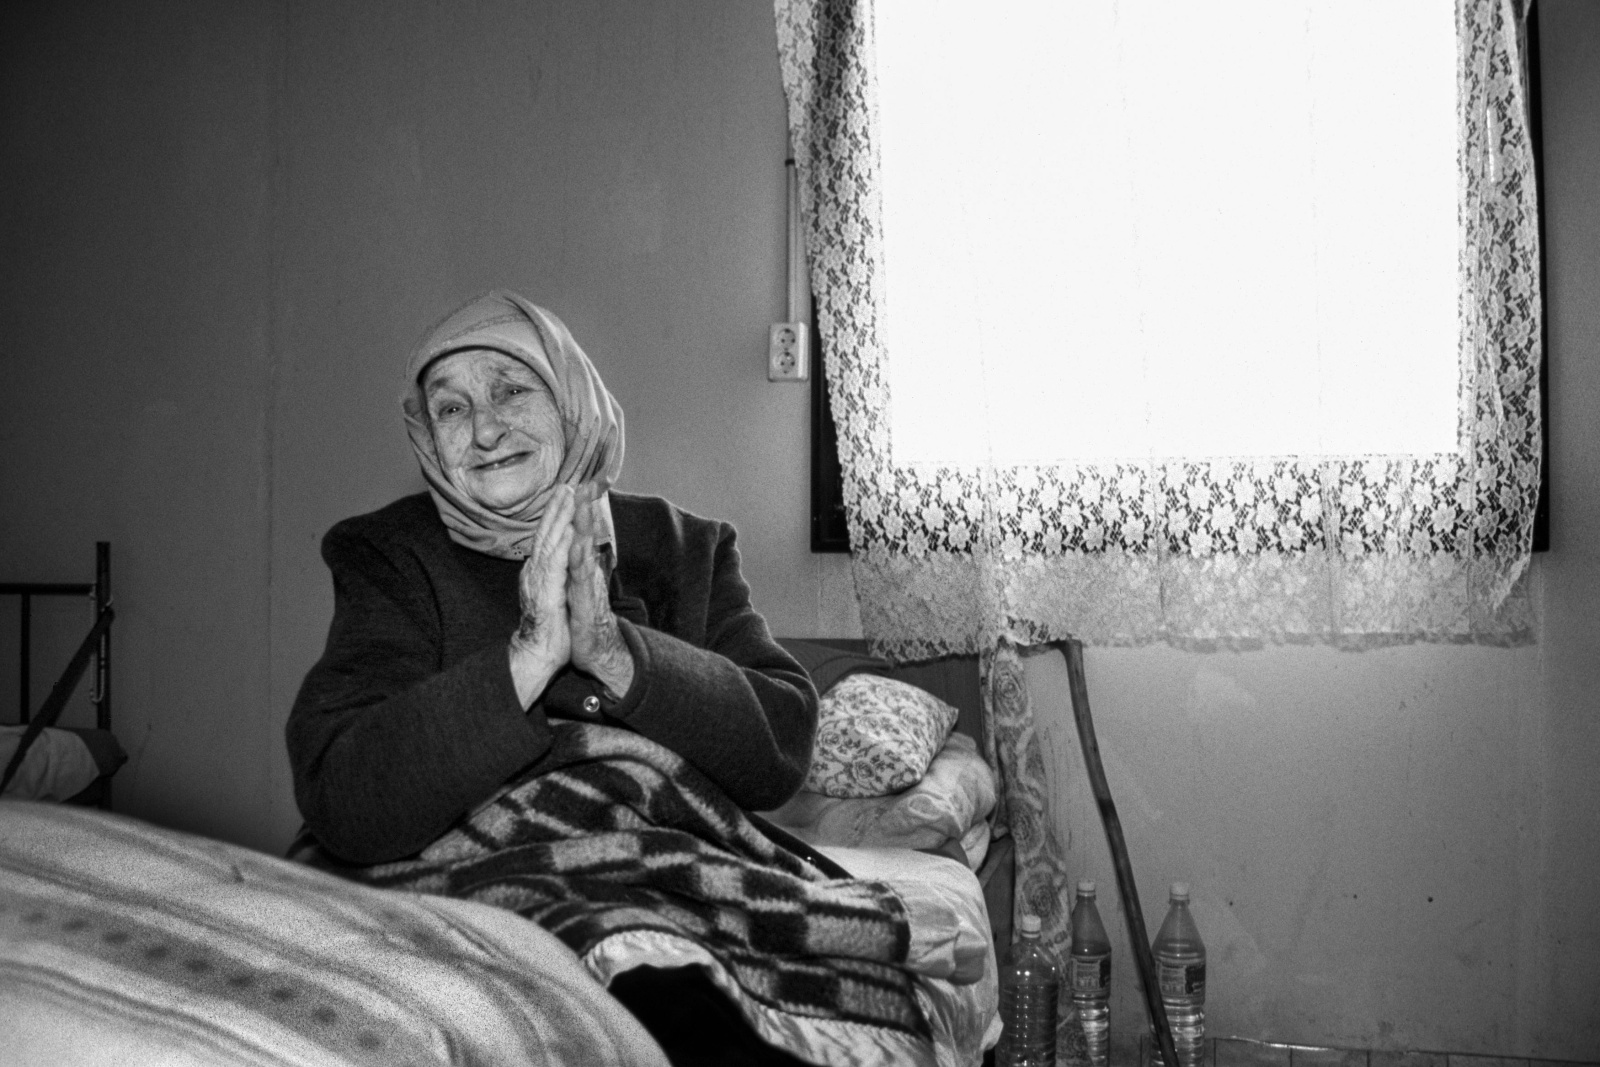 Aprile 1994 - Croazia, campo di accoglienza di Gasinci per profughi musulmani fuggiti dalla guerra in Bosnia e rifugiati nei centri dell’UNHCR  in Slavonia 